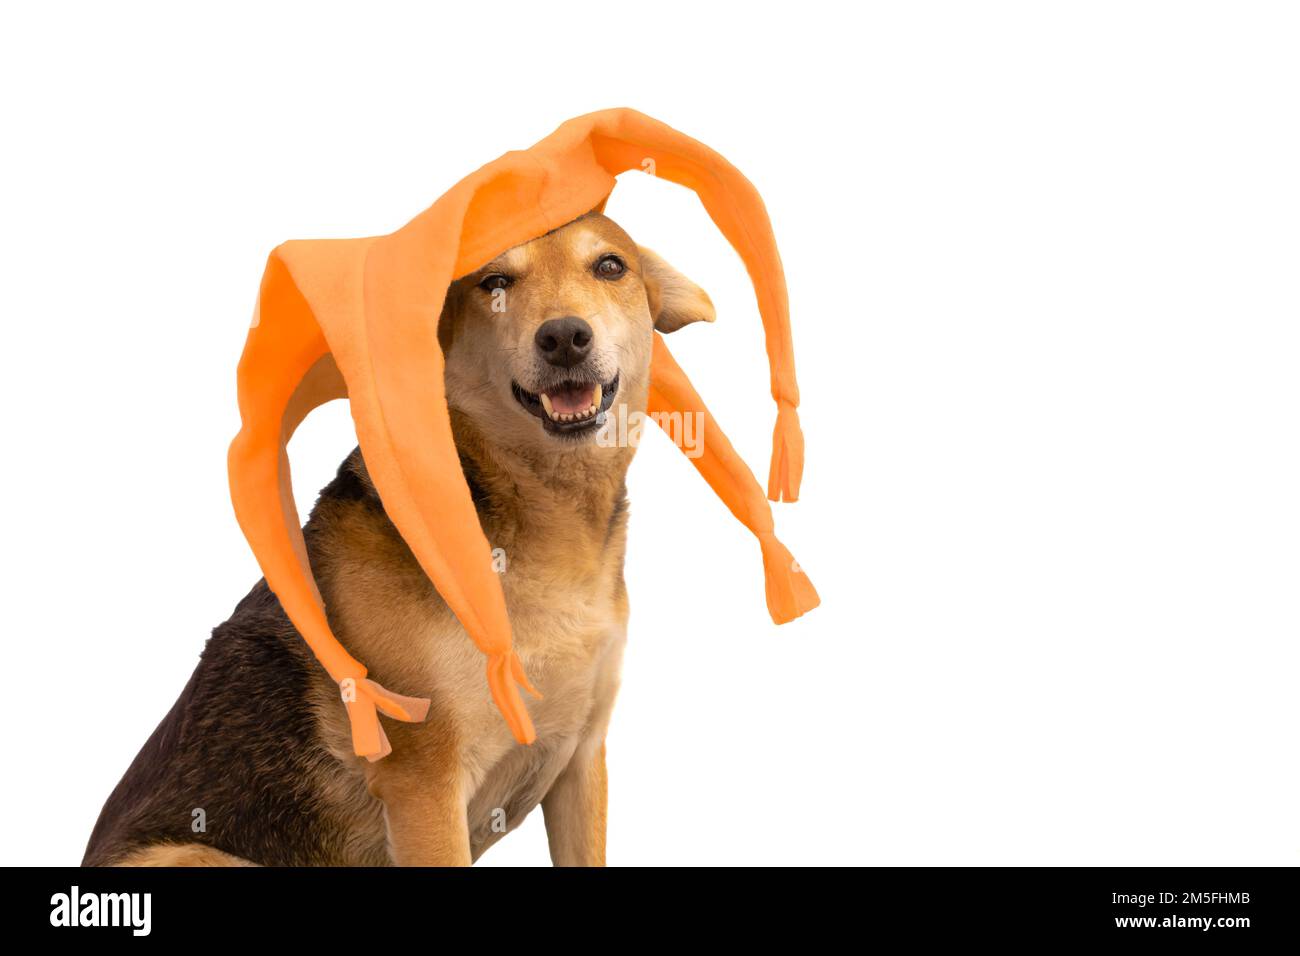 Un ritratto di cane con un cappello arancione a quattro punte harlequin isolato su sfondo bianco Foto Stock